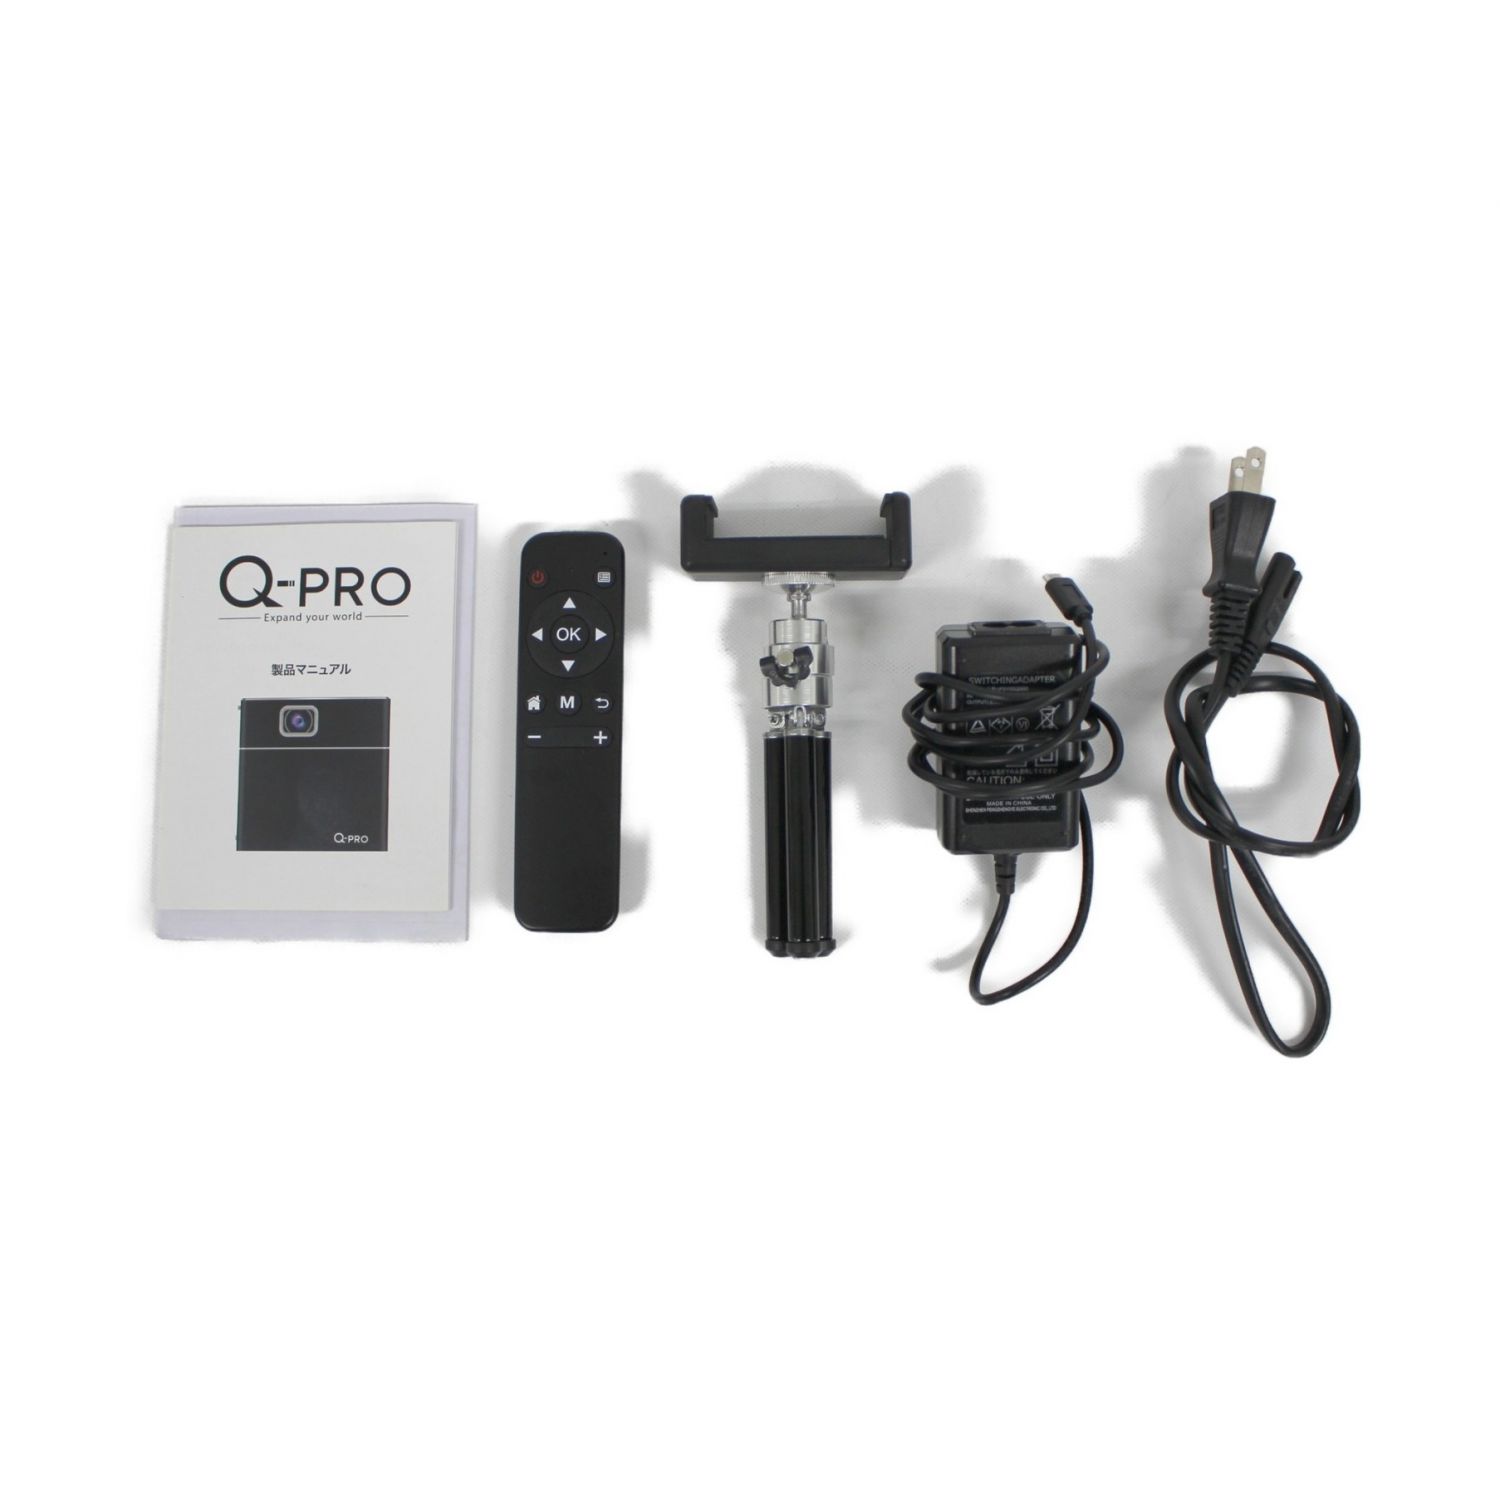 Three (スリー) 小型モバイルプロジェクター Q-PRO MP-CP01